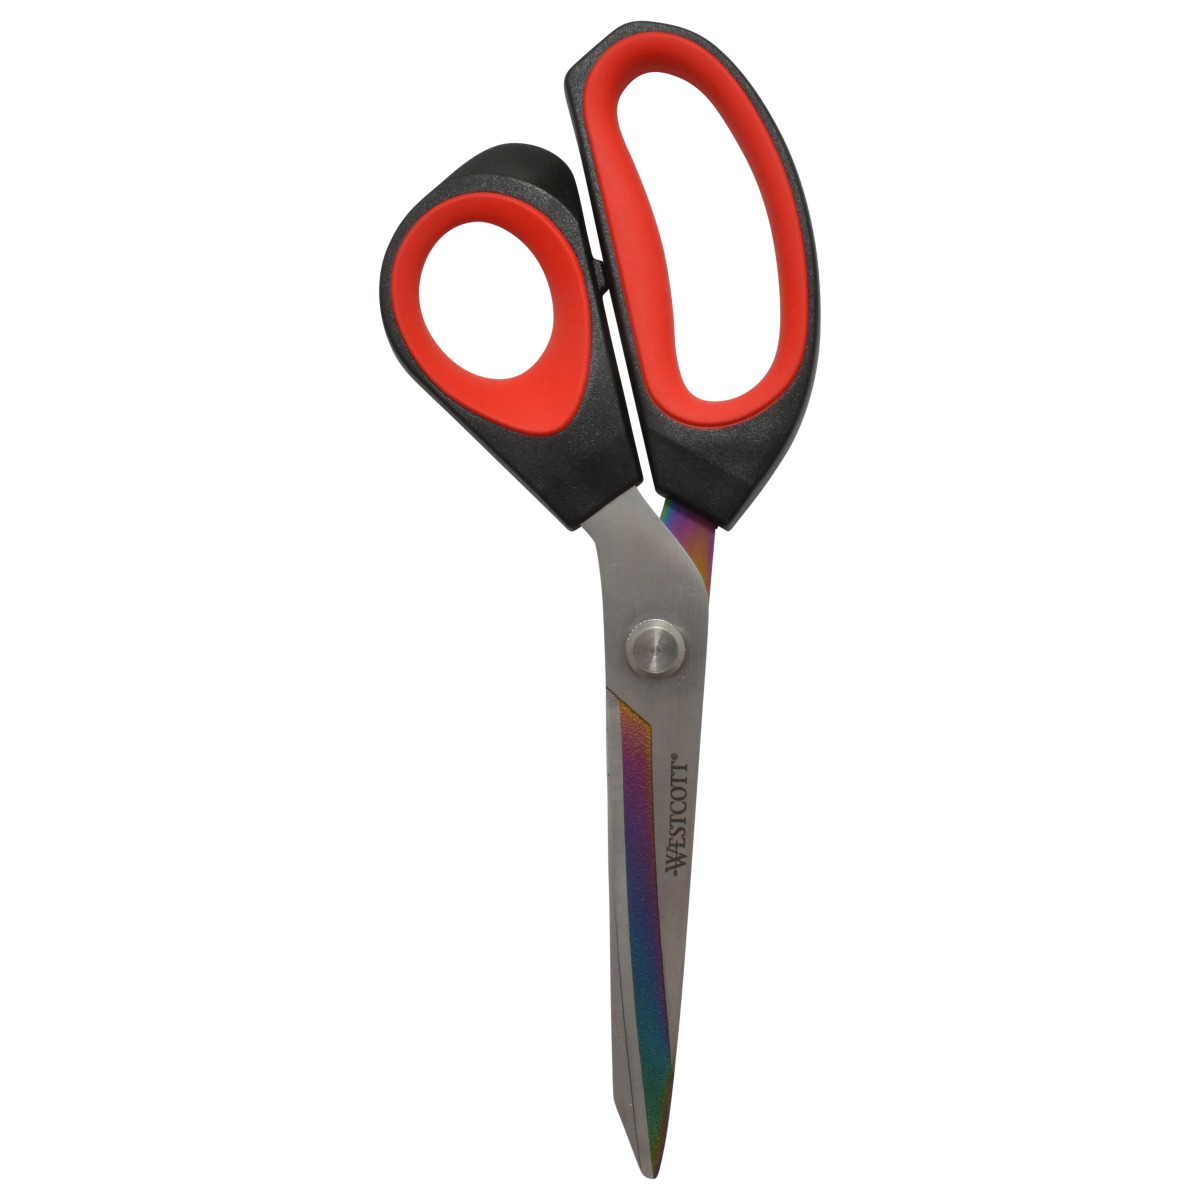 Westcott 9.5" Premium Tailor Scissors, Red/Black (17780)